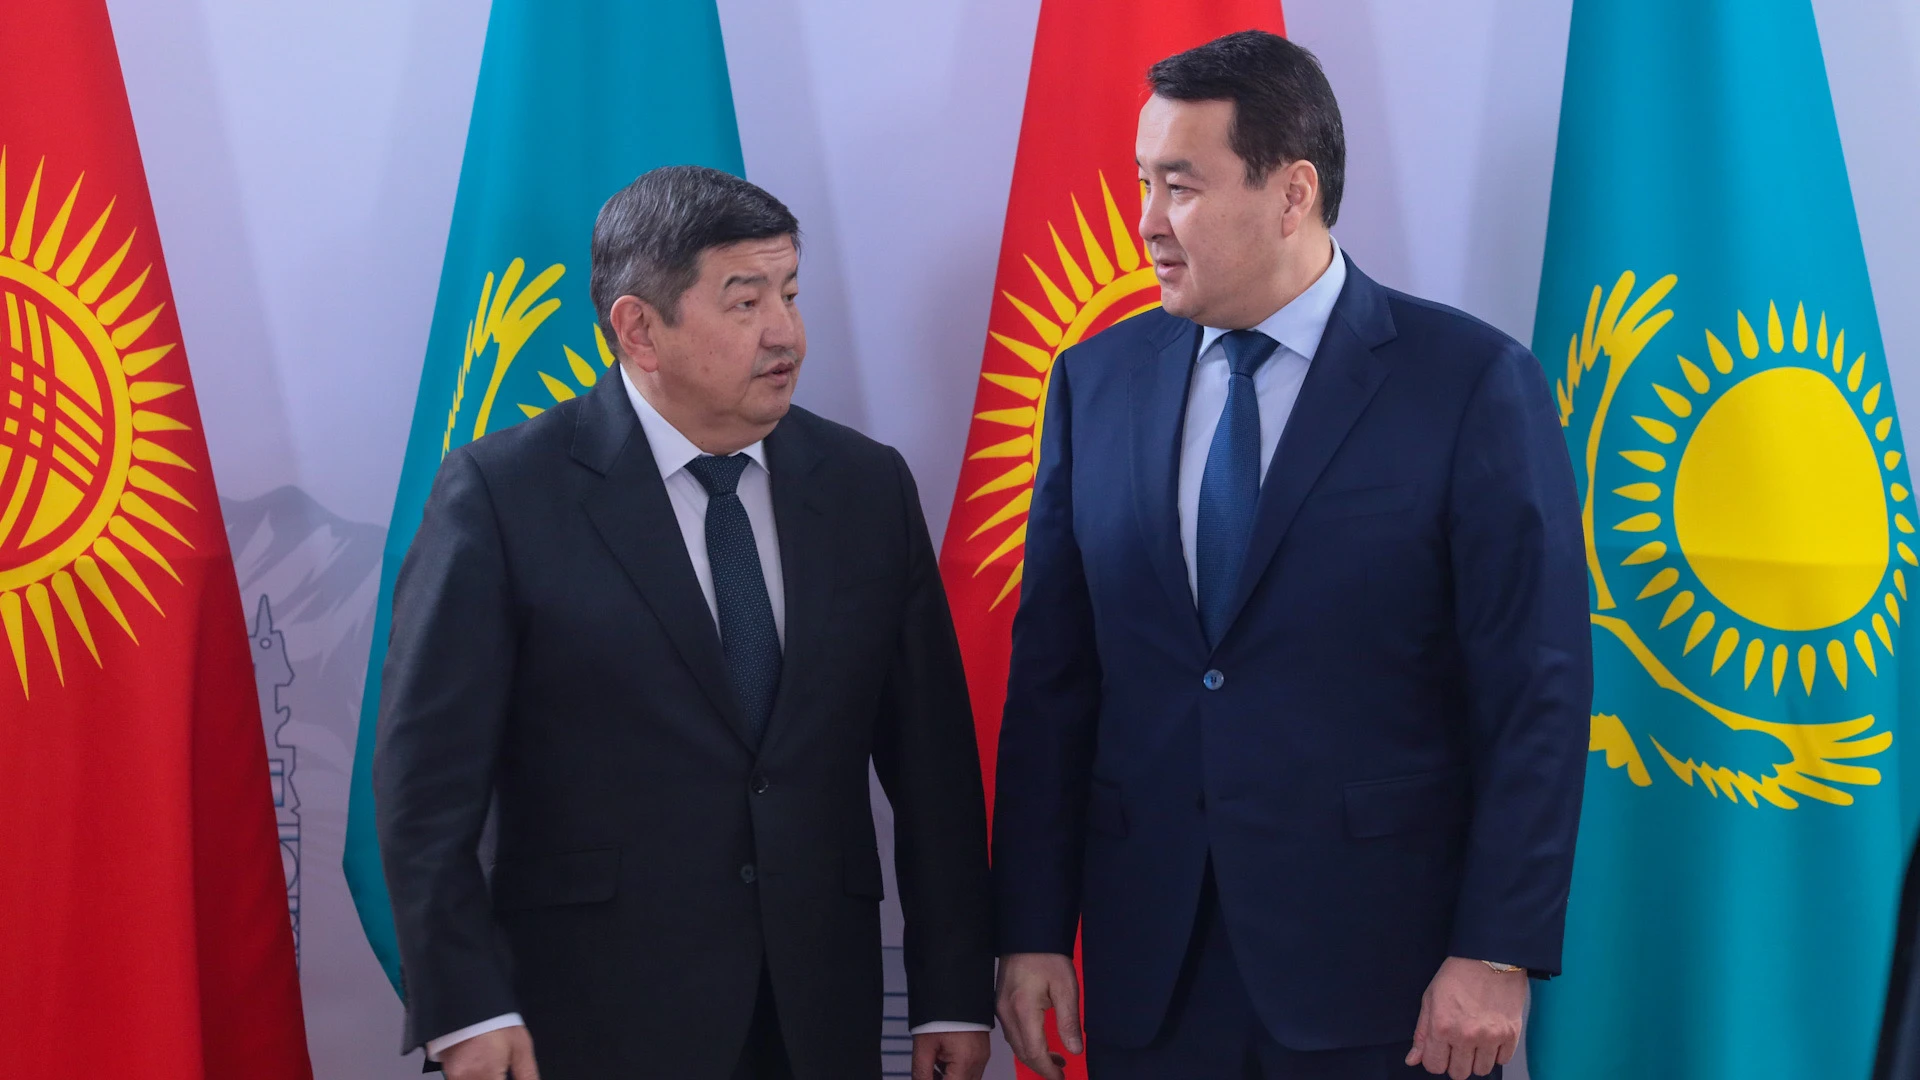 Қазақстан мен Қырғызстан су-энергетика саласындағы өзара іс-қимылды күшейту мәселелерін талқылады